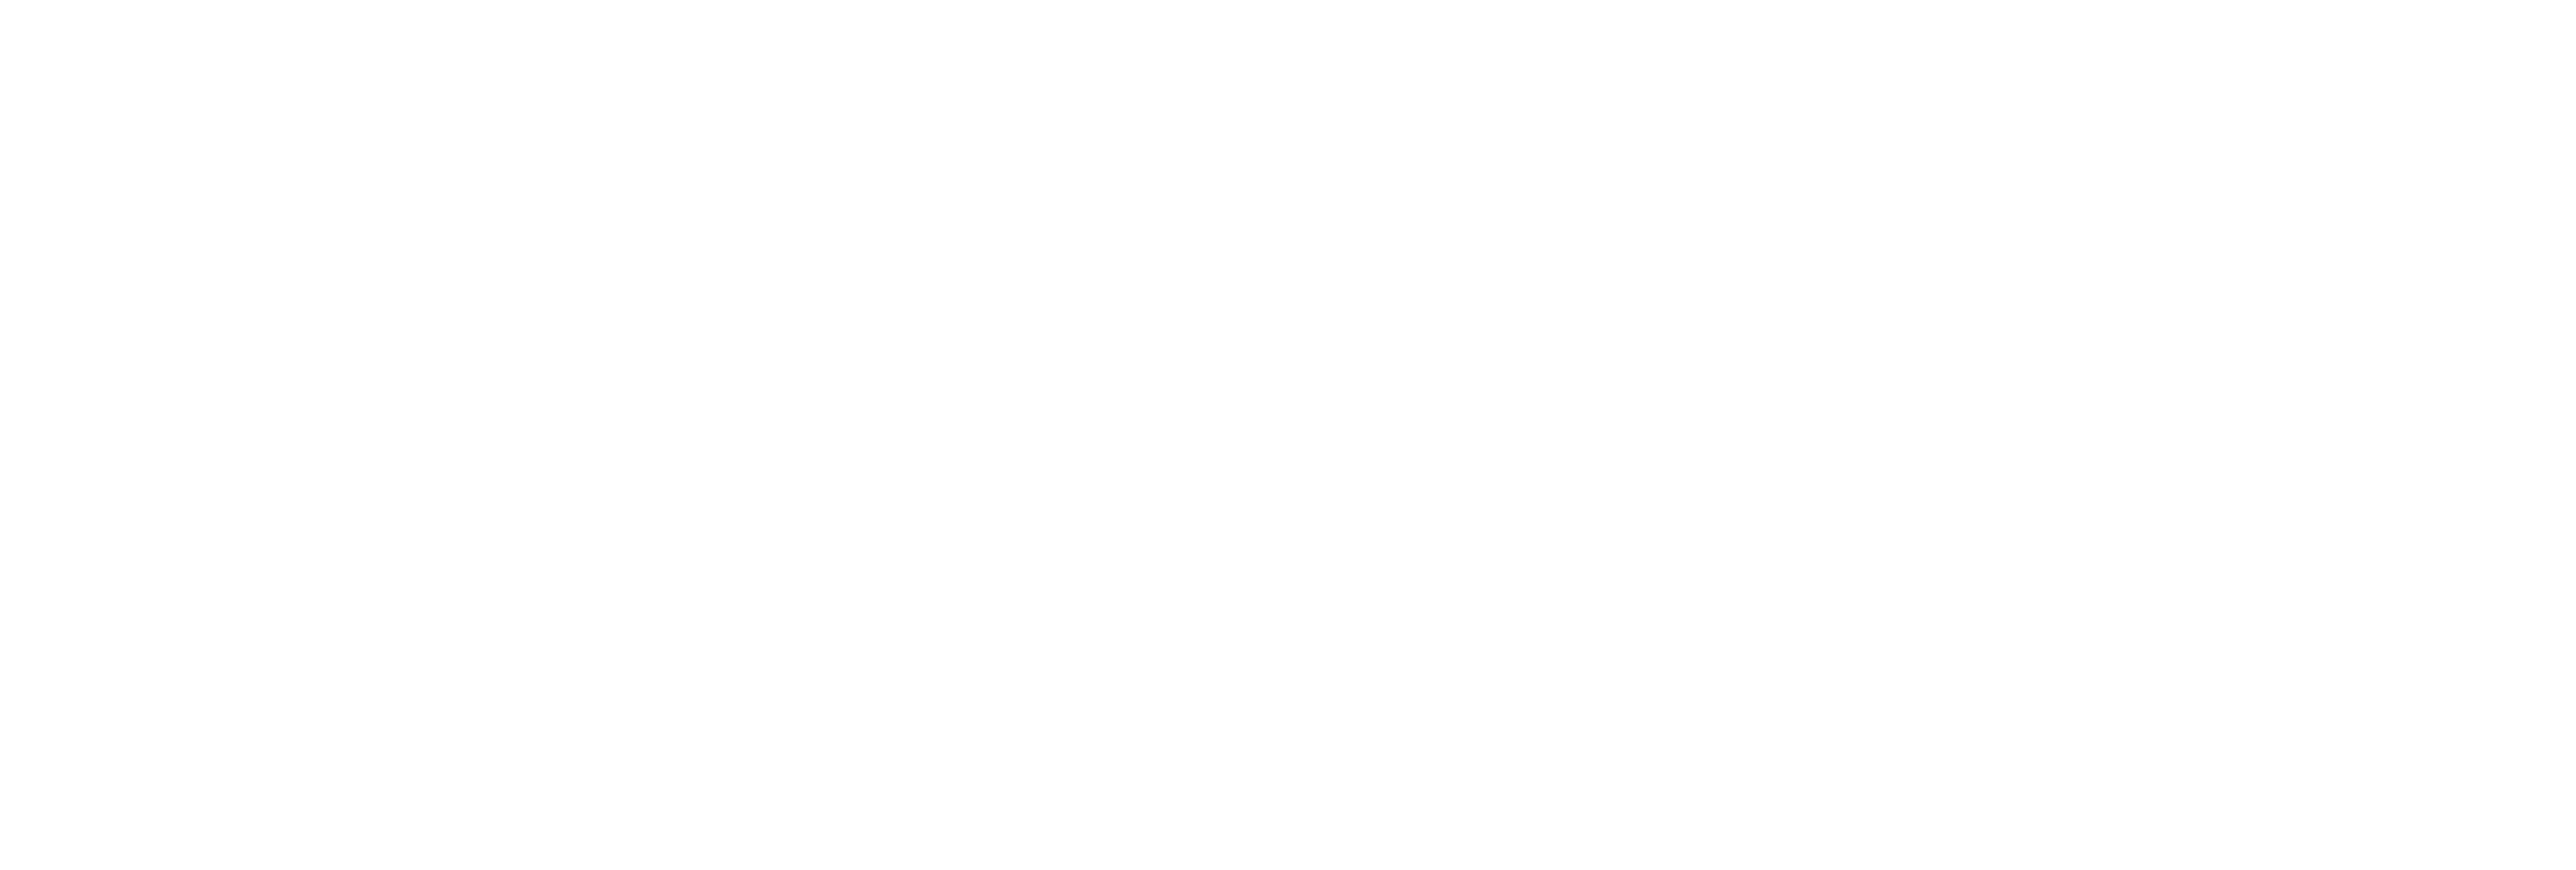 AniCura Dierenziekenhuis Drechtstreek - Centrum - GESLOTEN logo